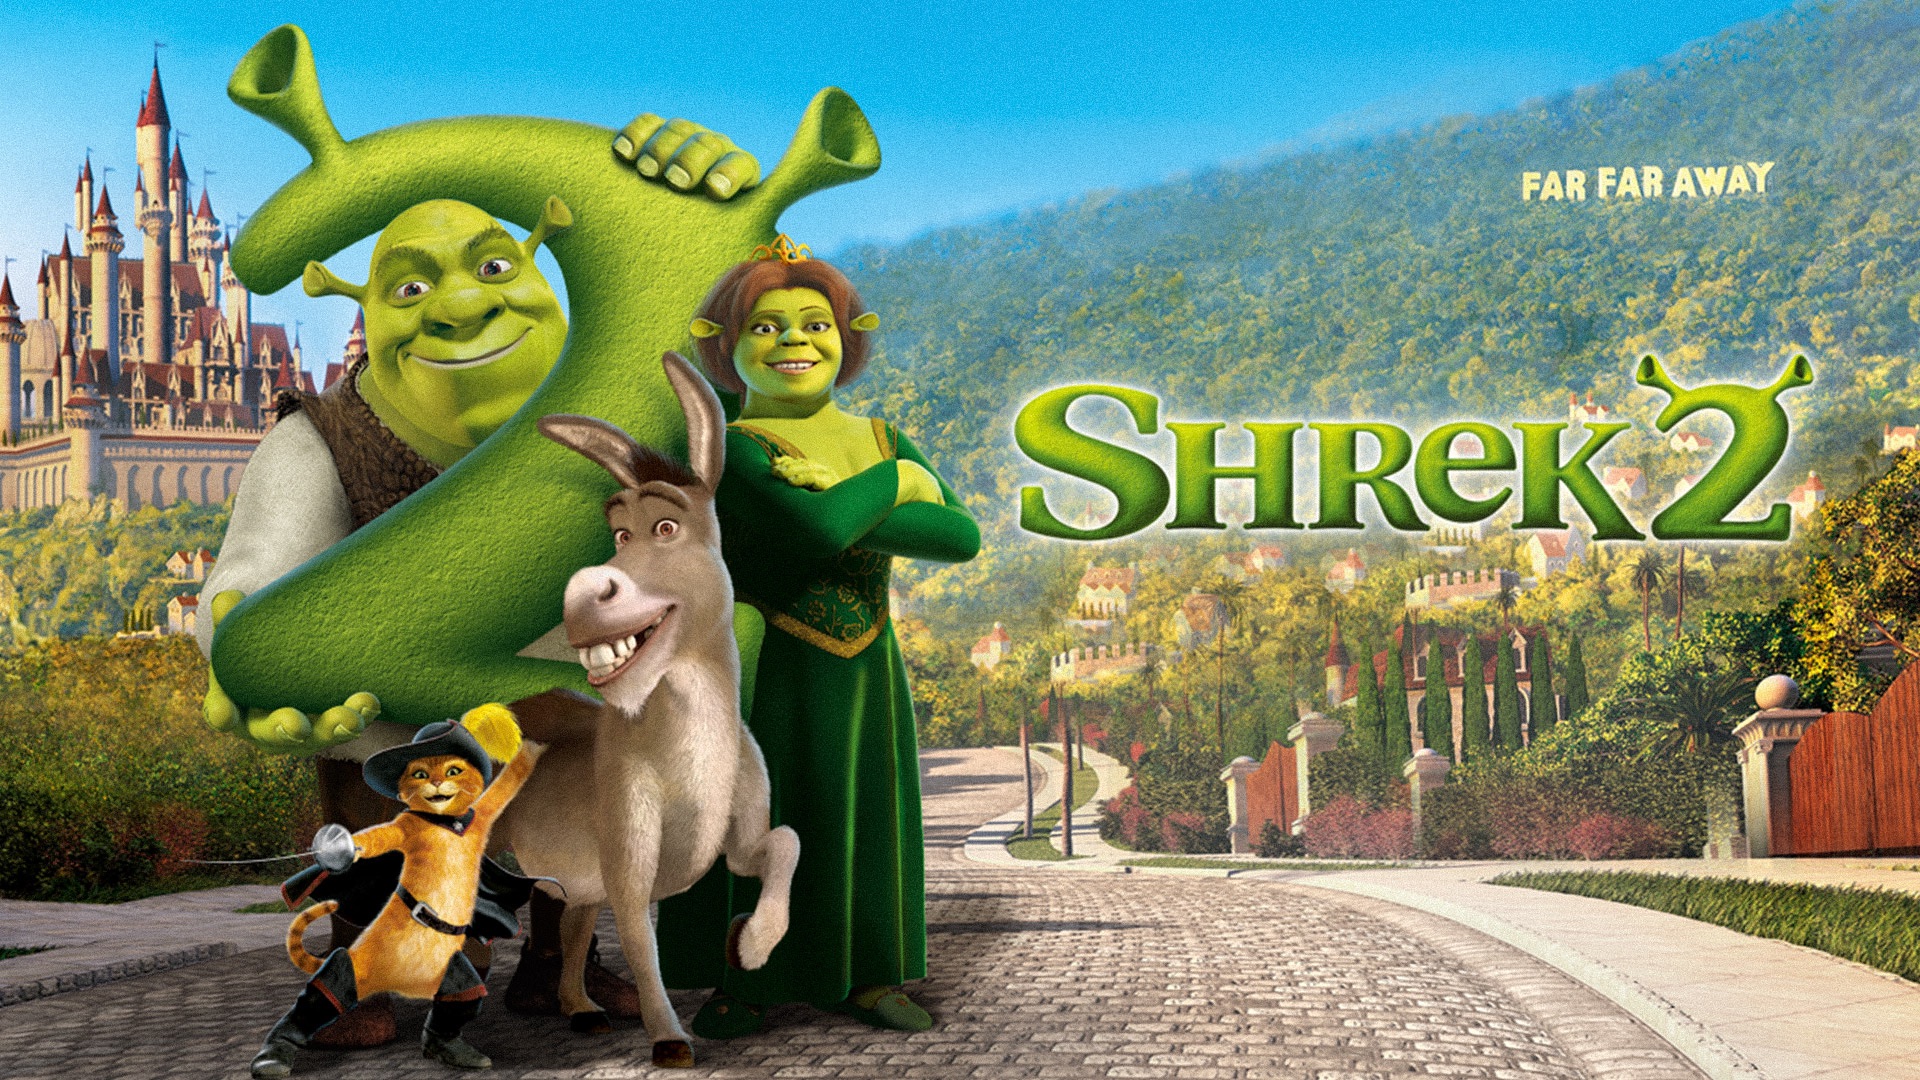 movie, shrek 2, donkey (shrek), princess fiona, puss in boots, shrek (character), shrek